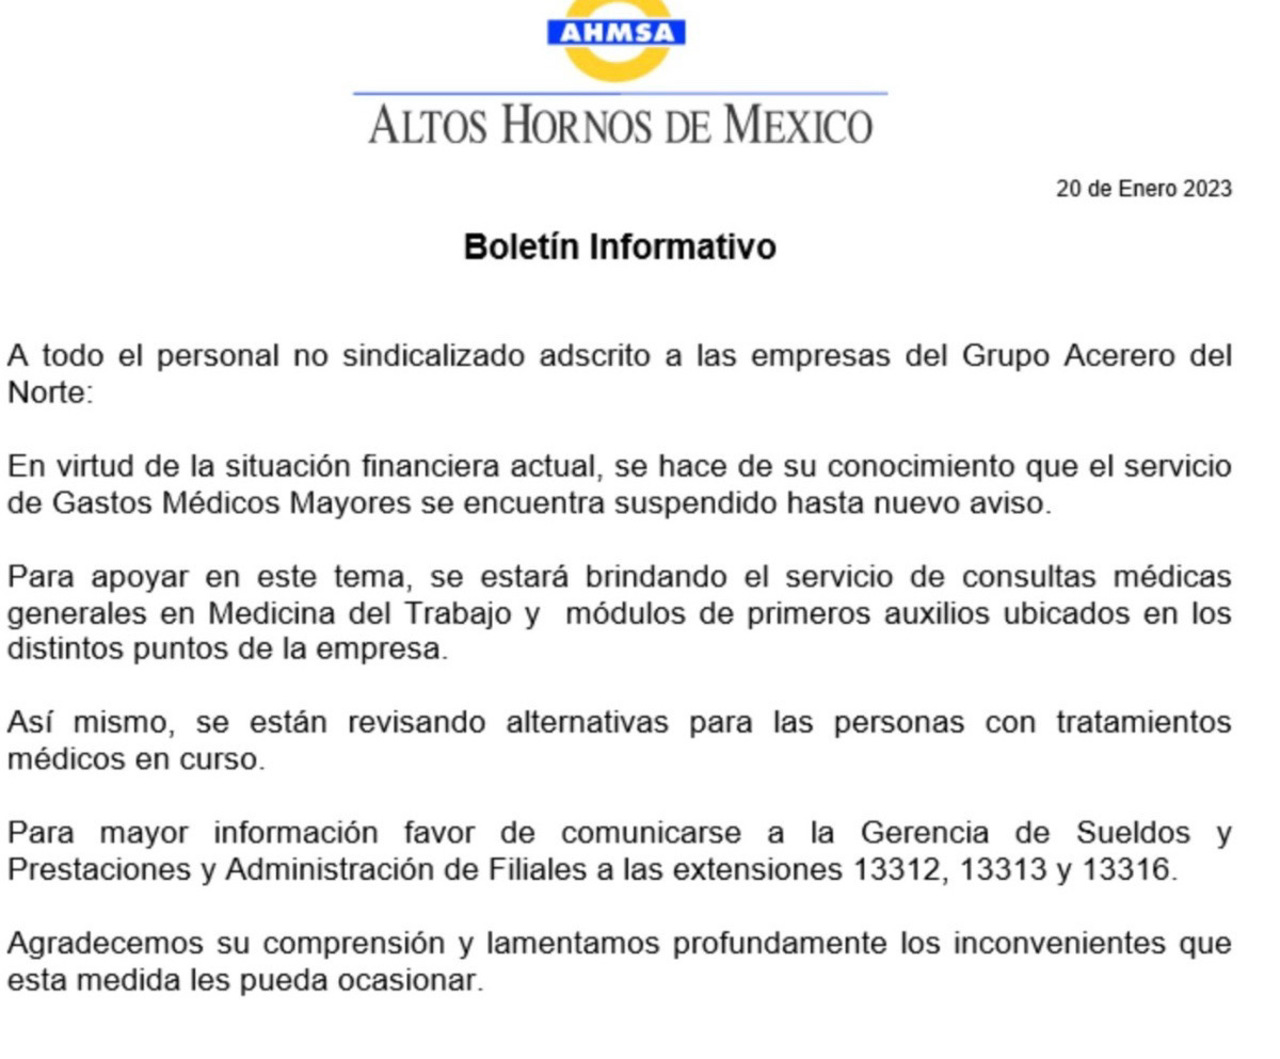 El corporativo dueño de Altos Hornos de México (AHMSA) no pudo pagar la última cuota mensual, por lo que la aseguradora suspendió el servicio.